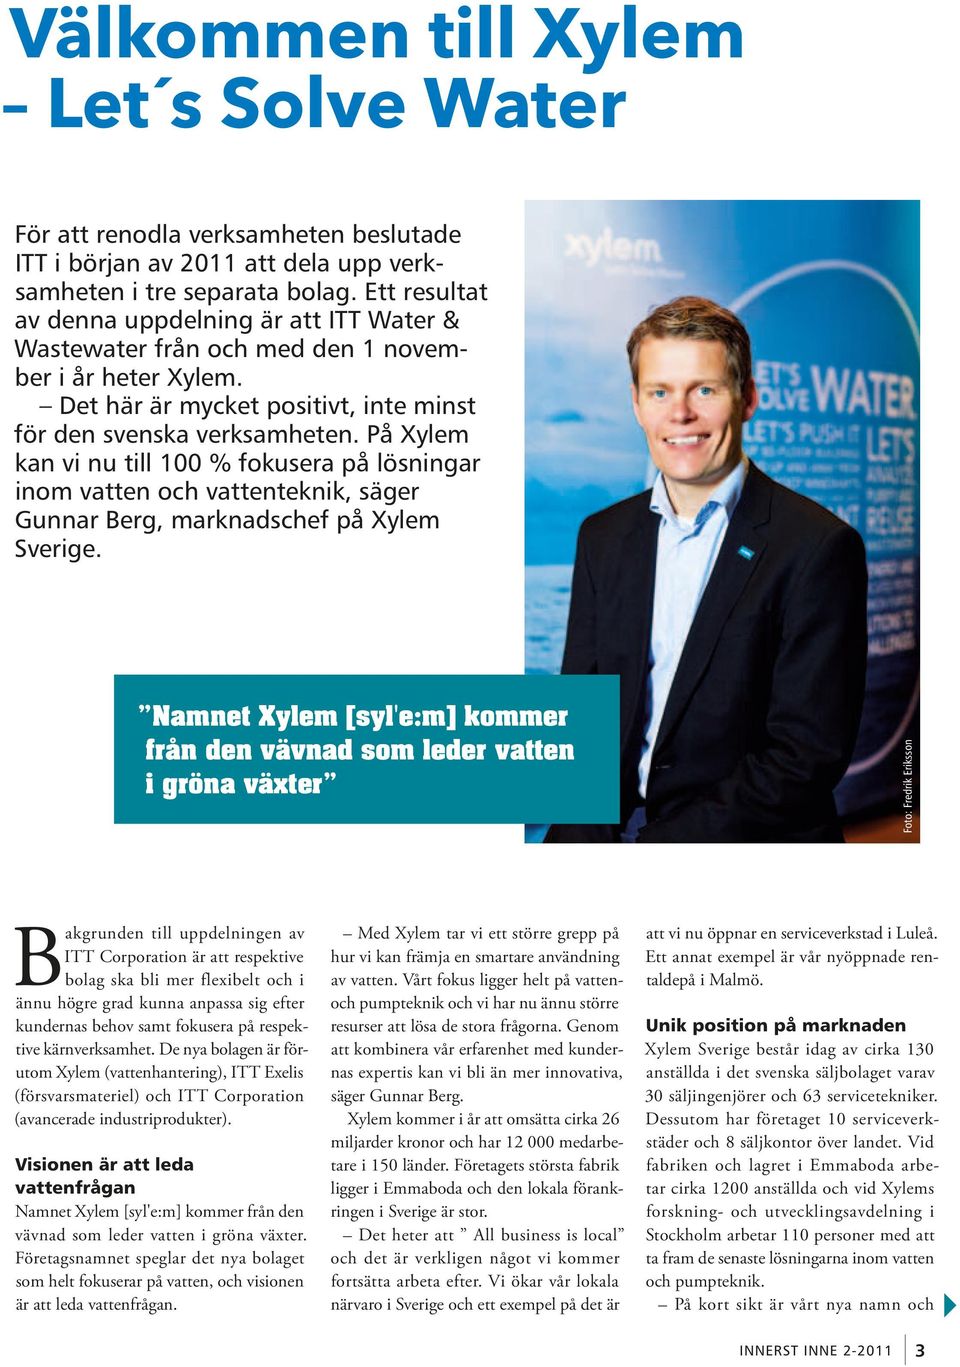 På Xylem kan vi nu till 100 % fokusera på lösningar inom vatten och vattenteknik, säger Gunnar Berg, marknadschef på Xylem Sverige.